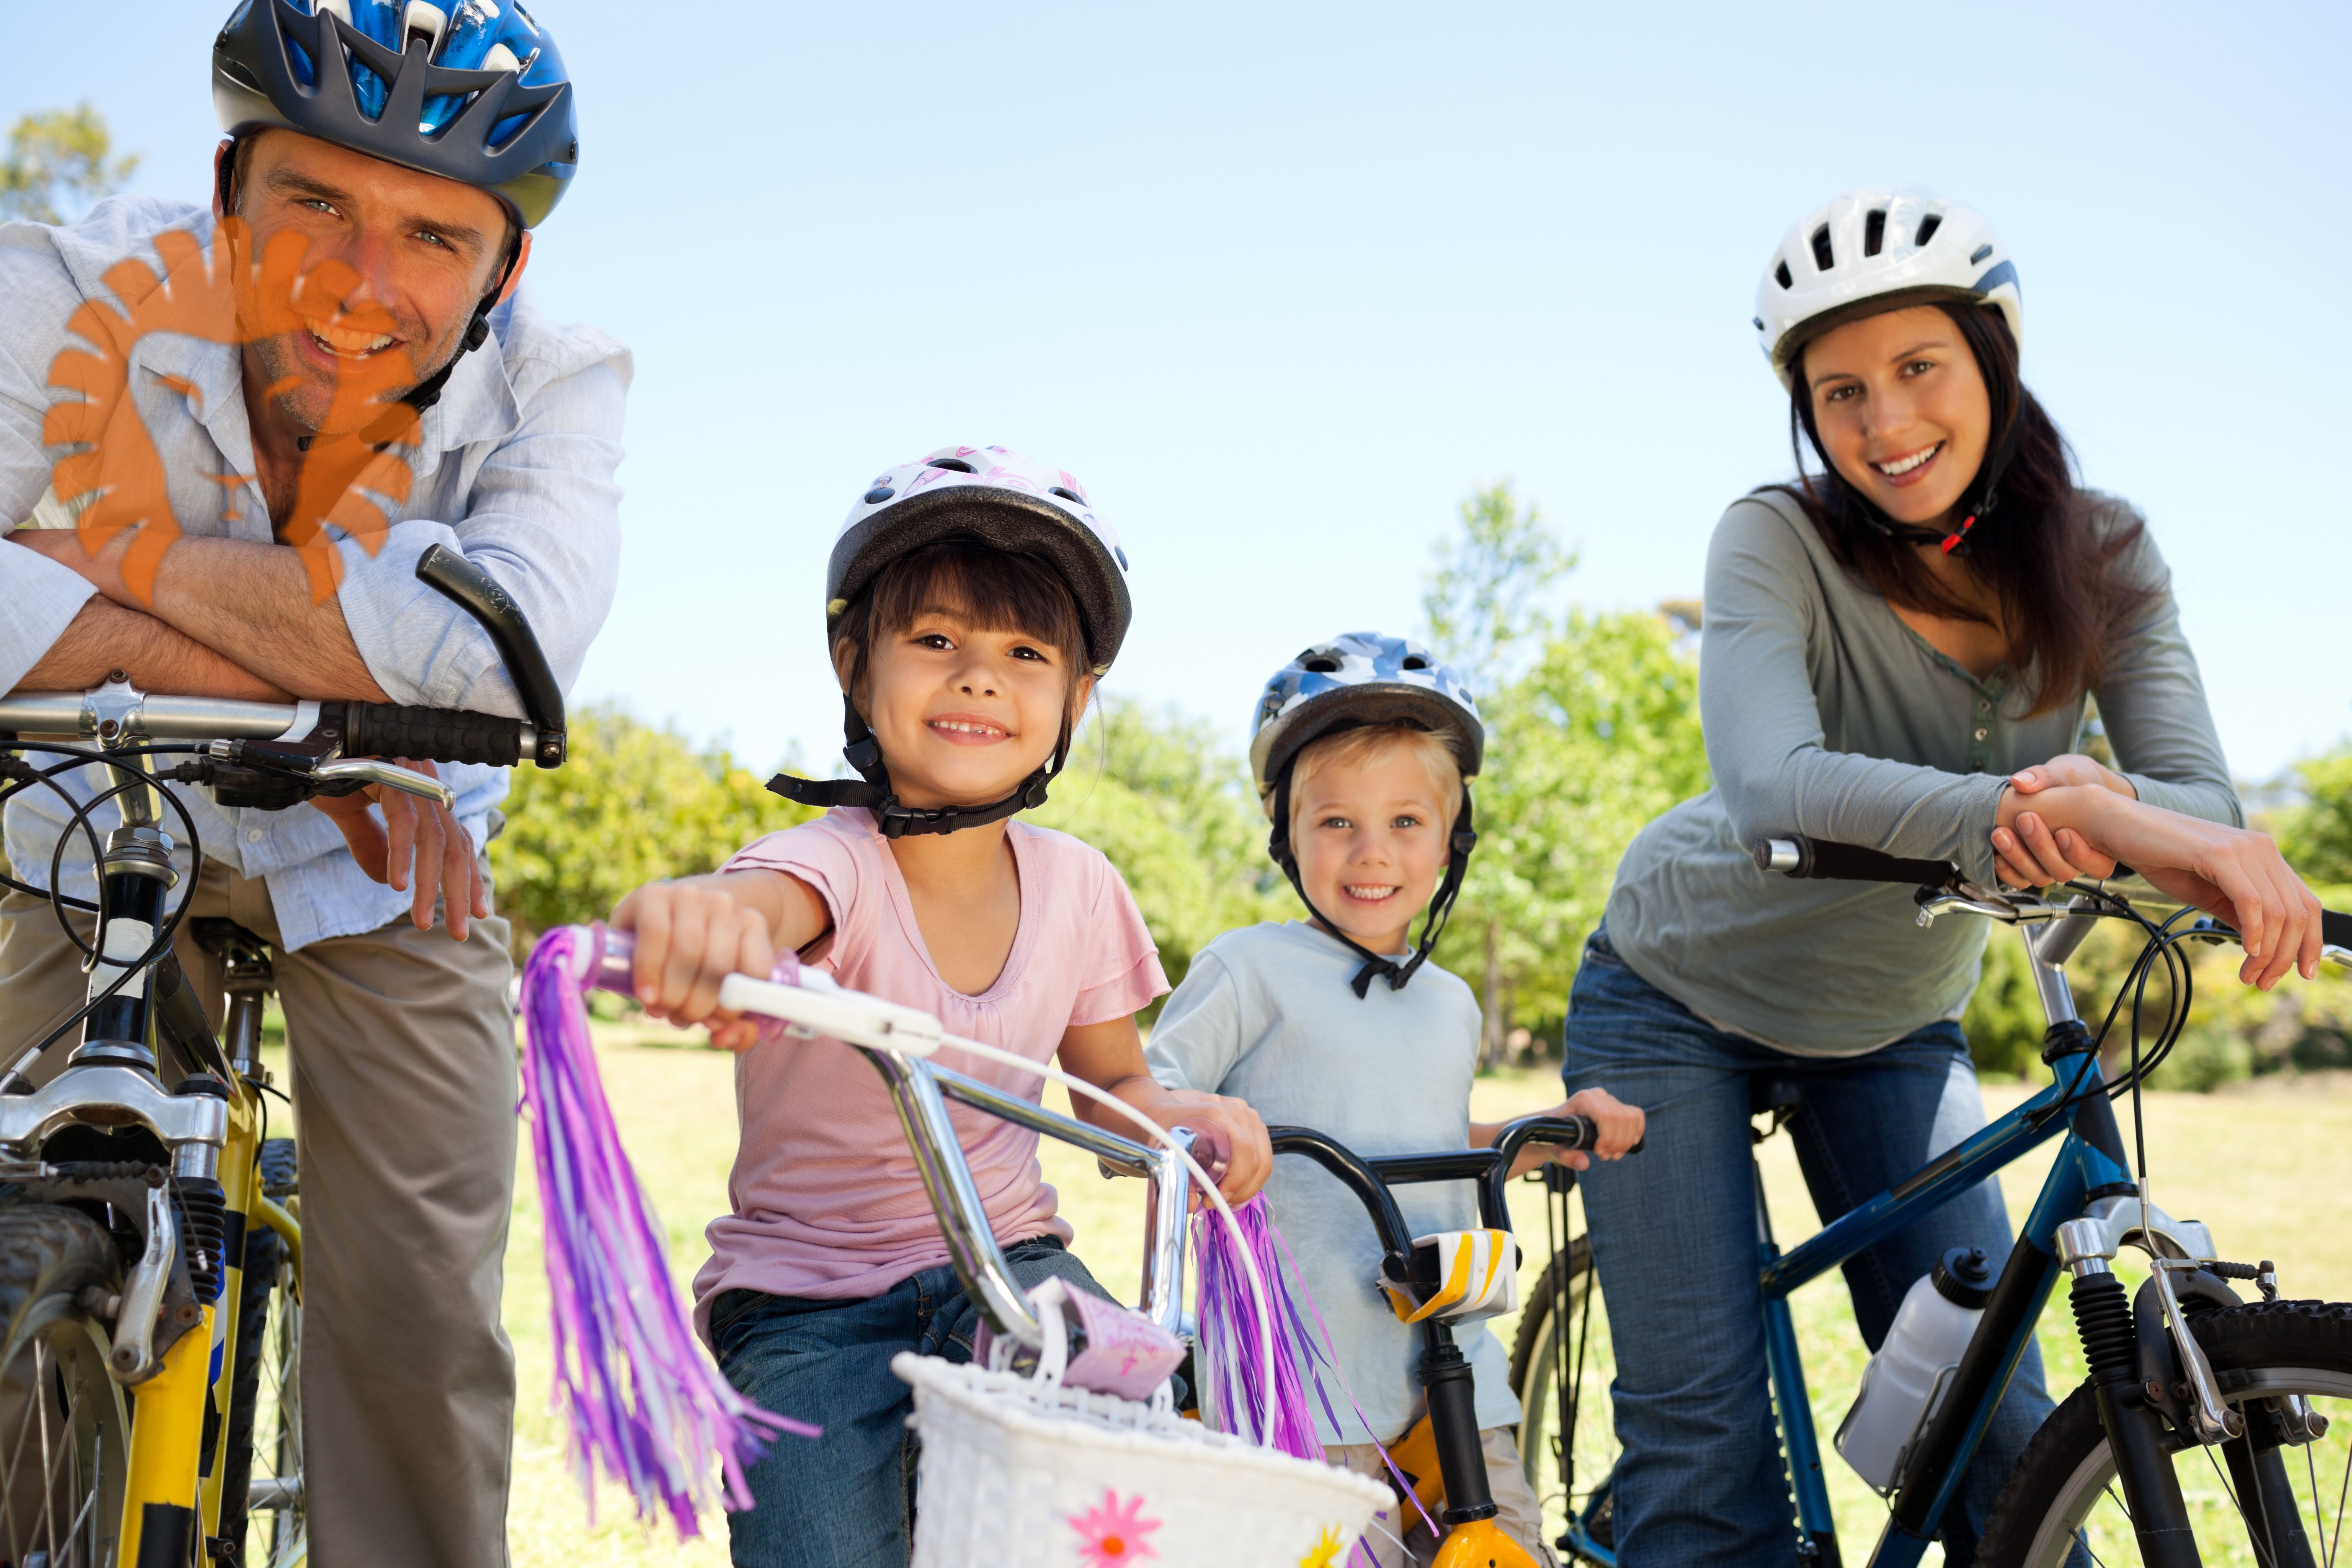 The children are riding bikes. Велосипеды для всей семьи. Дети с велосипедом. Семья на велосипедах. Велопрогулки семьей.